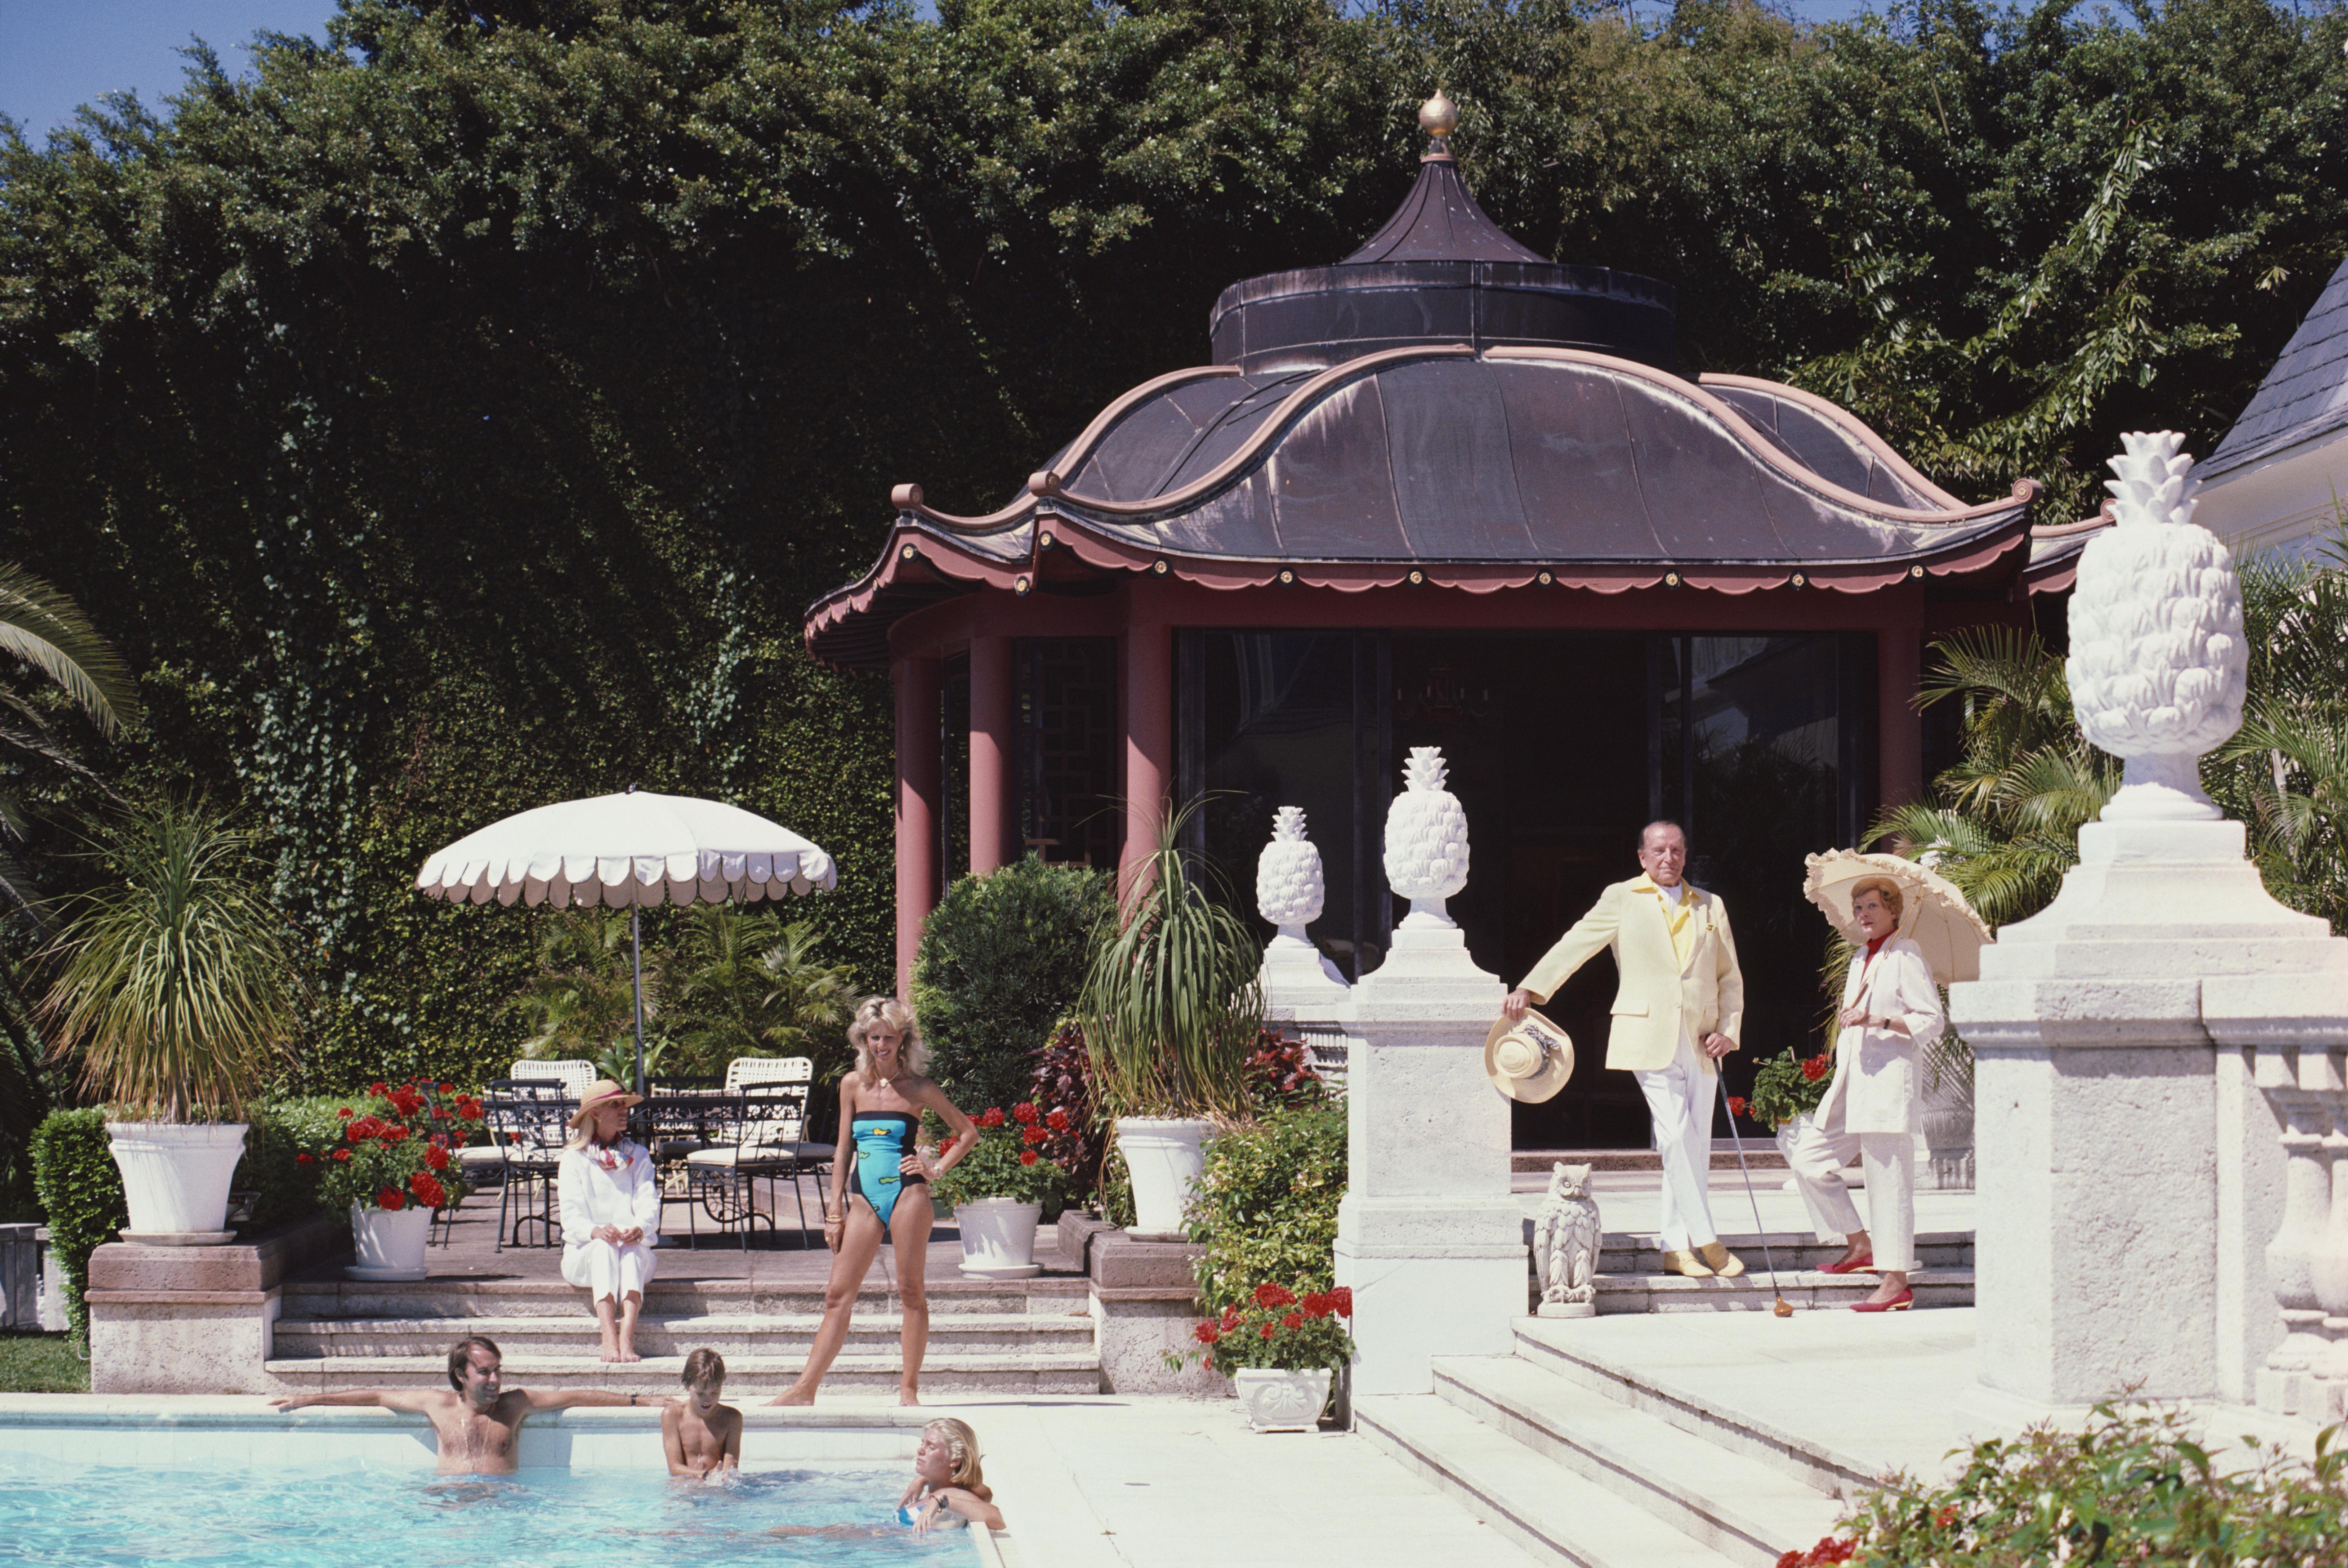 Eine Gruppe von Badegästen in einem Schwimmbad in Palm Beach, 1985. Dahinter befindet sich ein von John Volk entworfenes Poolhaus in Form einer chinesischen Pagode.

Schlanke Aarons
Pagode Poolhaus
Lambda-Druck
4 Größen verfügbar
Slim Aarons Estate